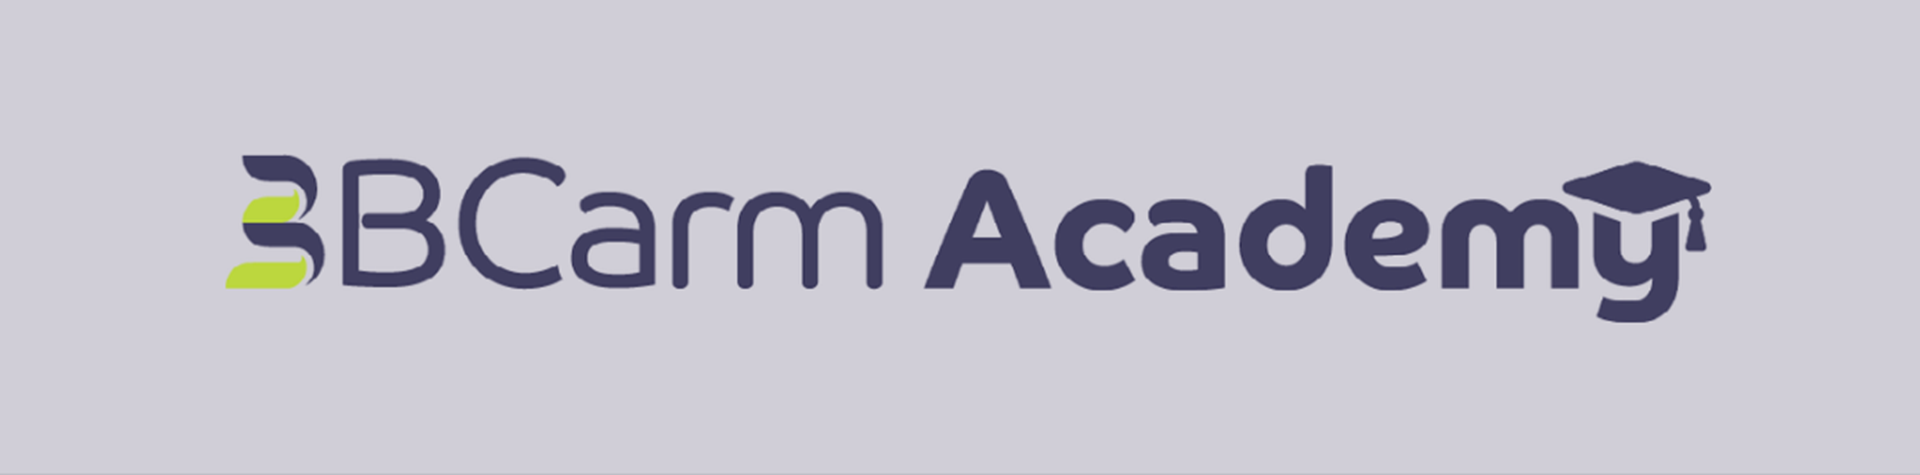 BCarm Academy